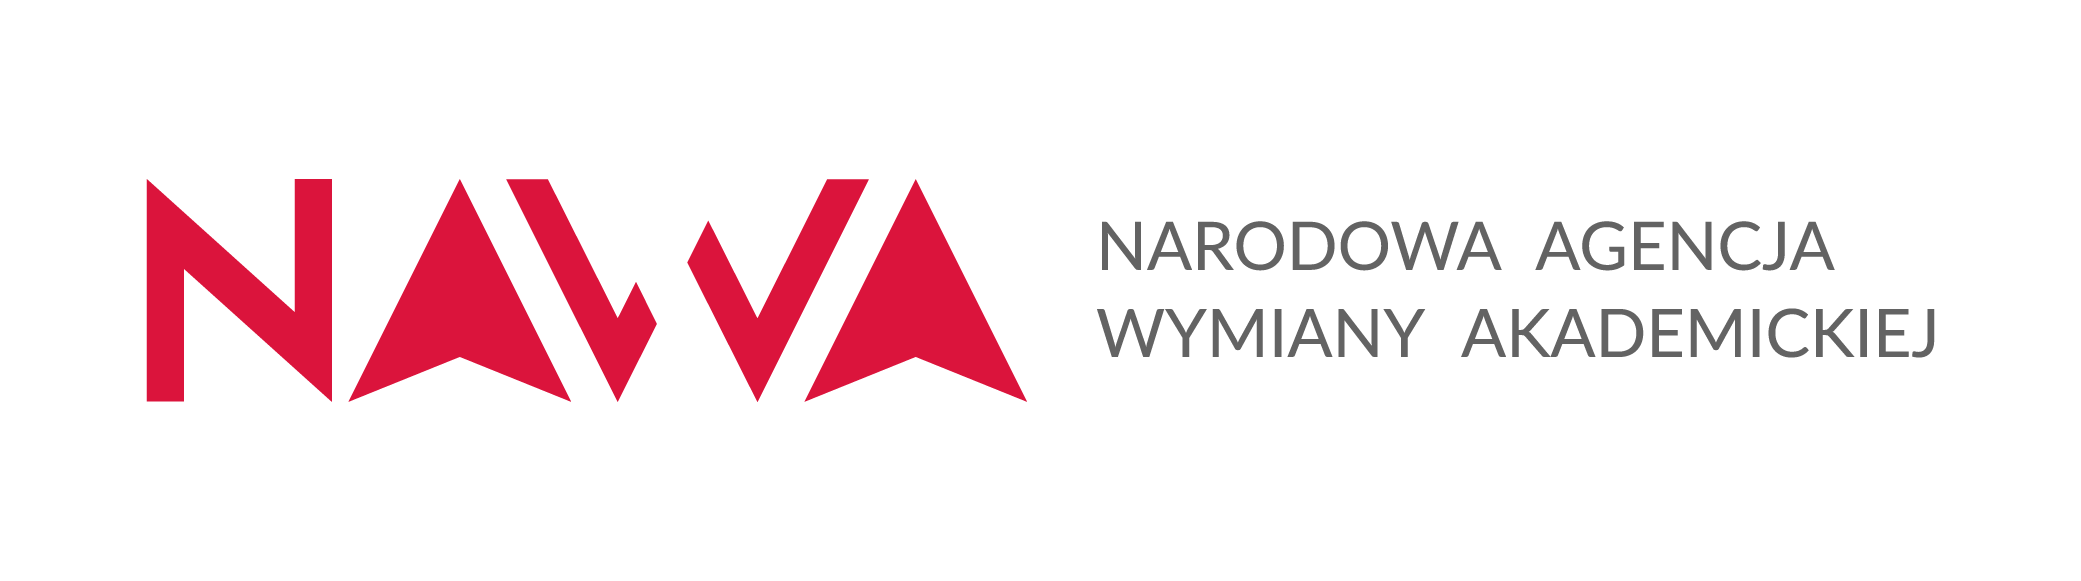 Logotypu Narodowa Agencja Wymiany Akademickiej